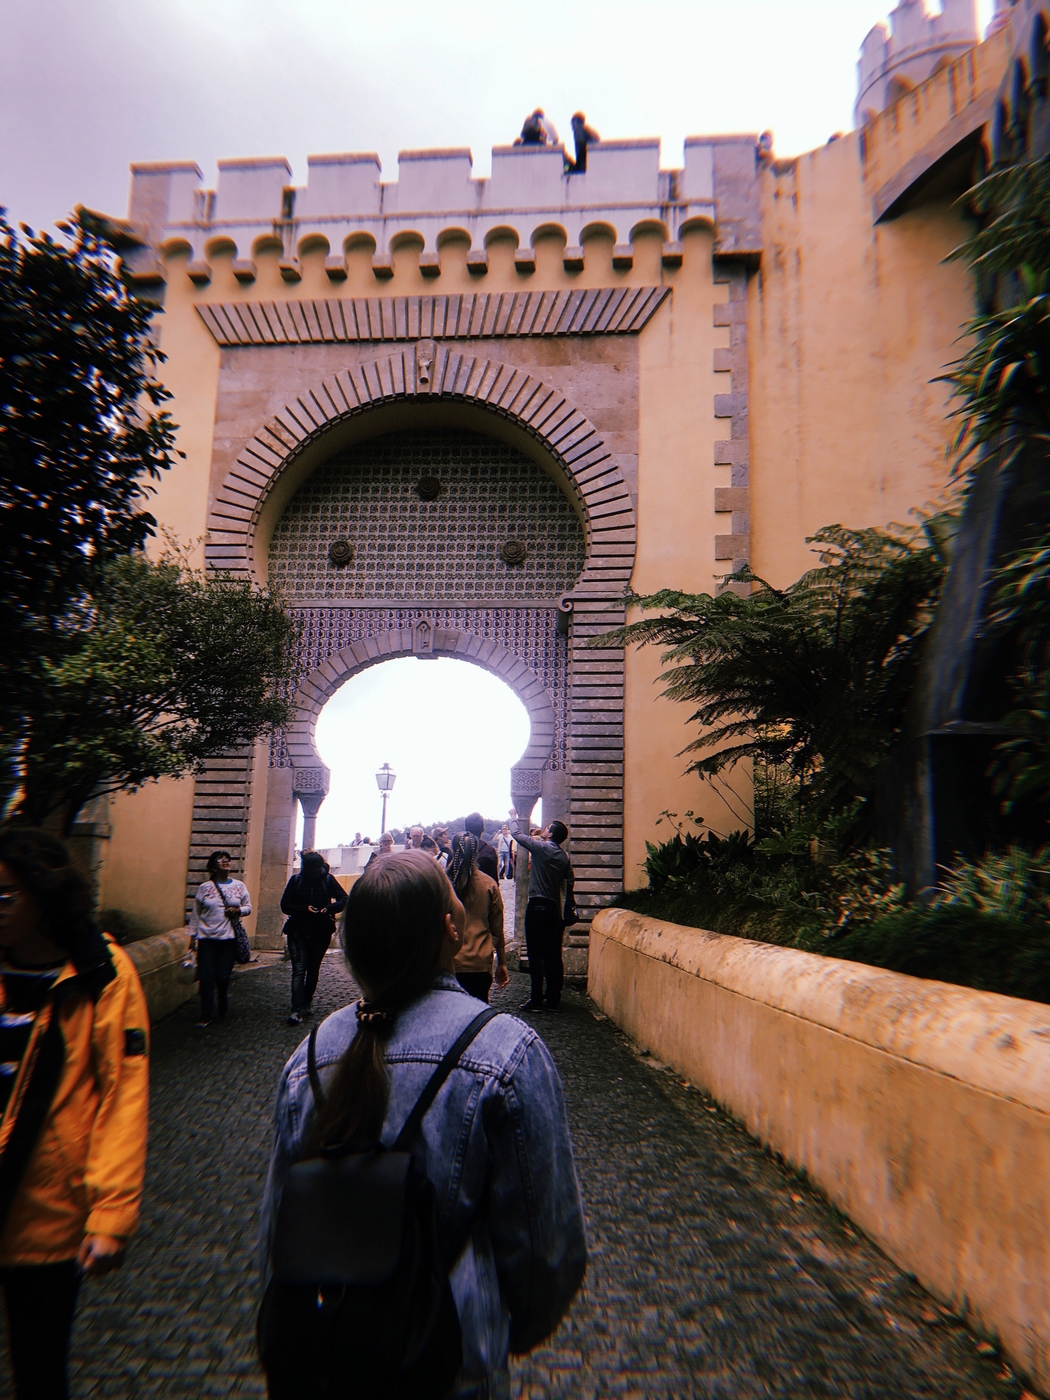 Sintra: Palácio da Pena